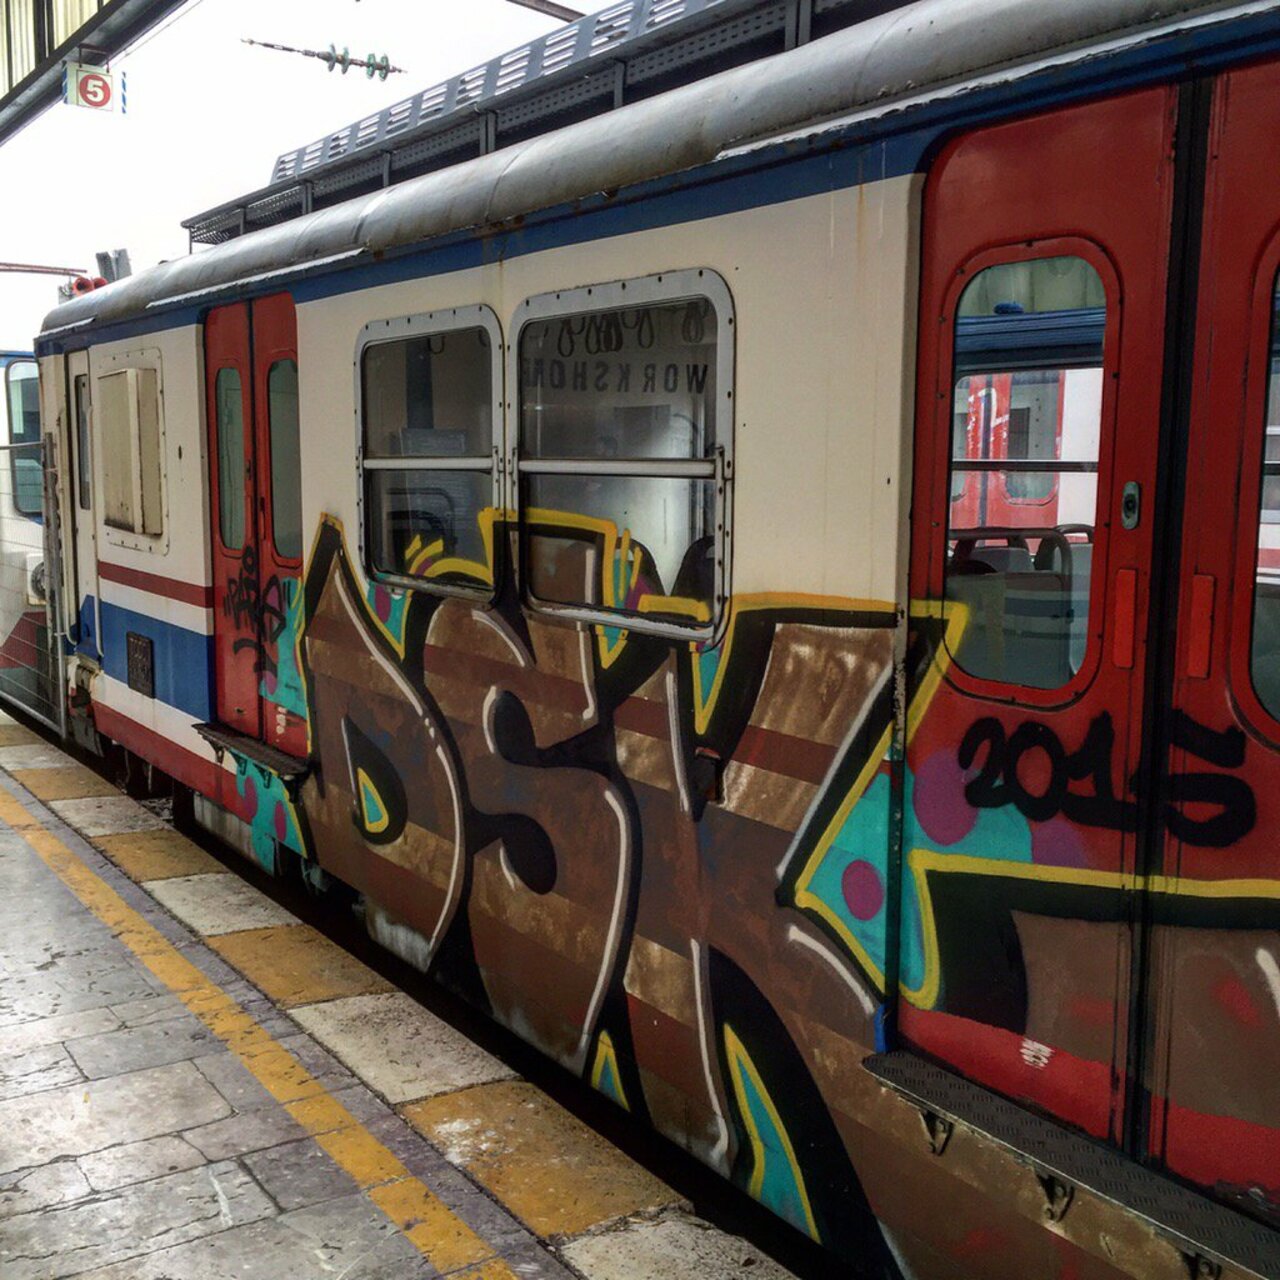 RT @Tacli: Wonderful #graffiti on the #Istanbul trains #urbanart #streetart #murals https://t.co/RxkryTm2cj